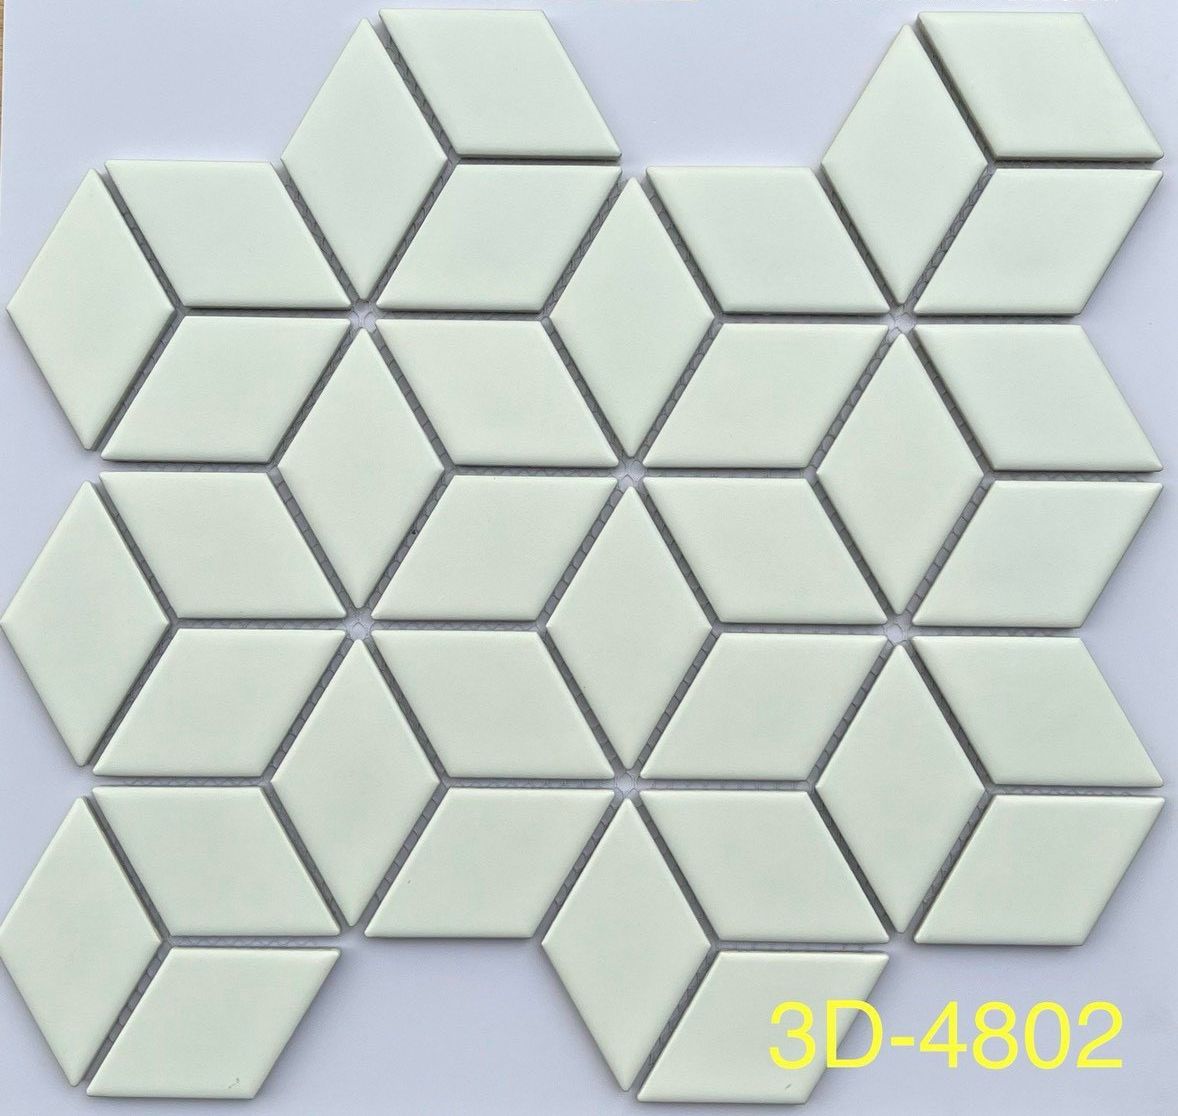 gach mosaic 3d-4802